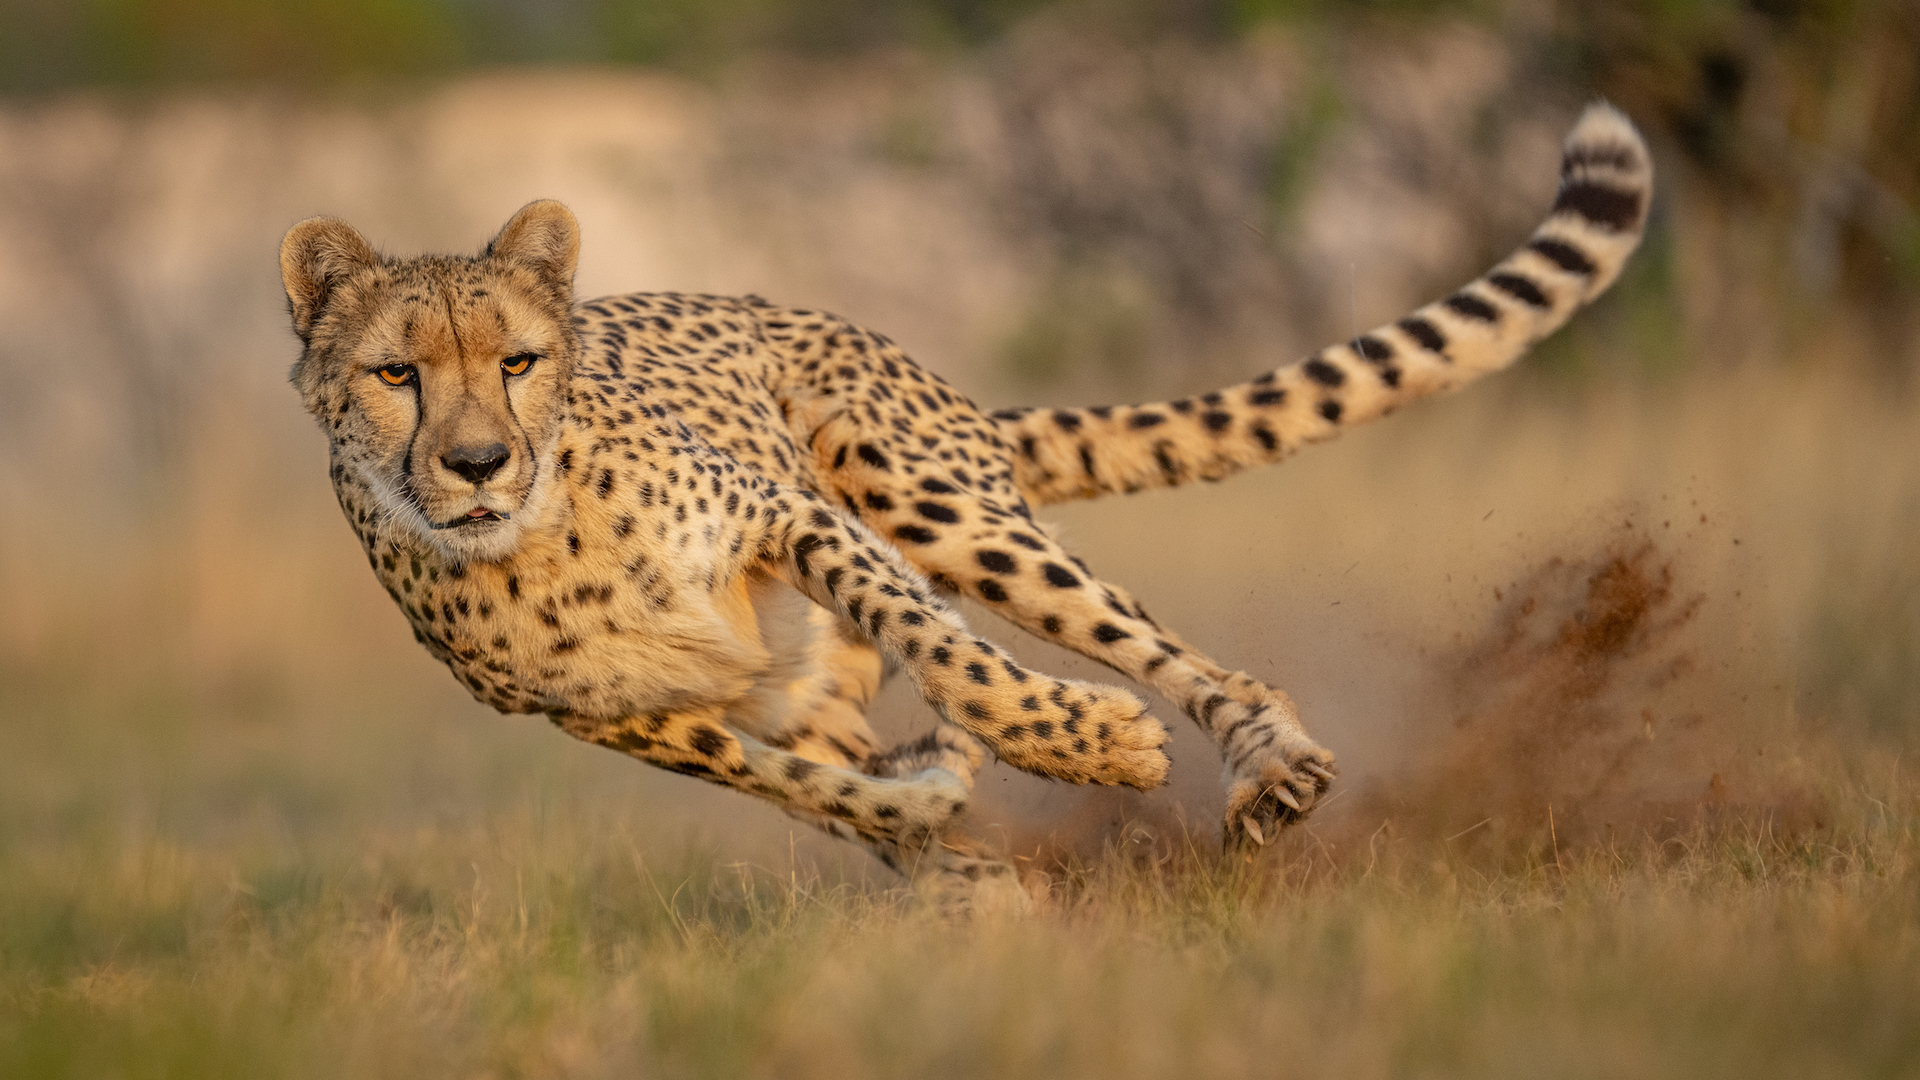 A photograph of a running cheetah